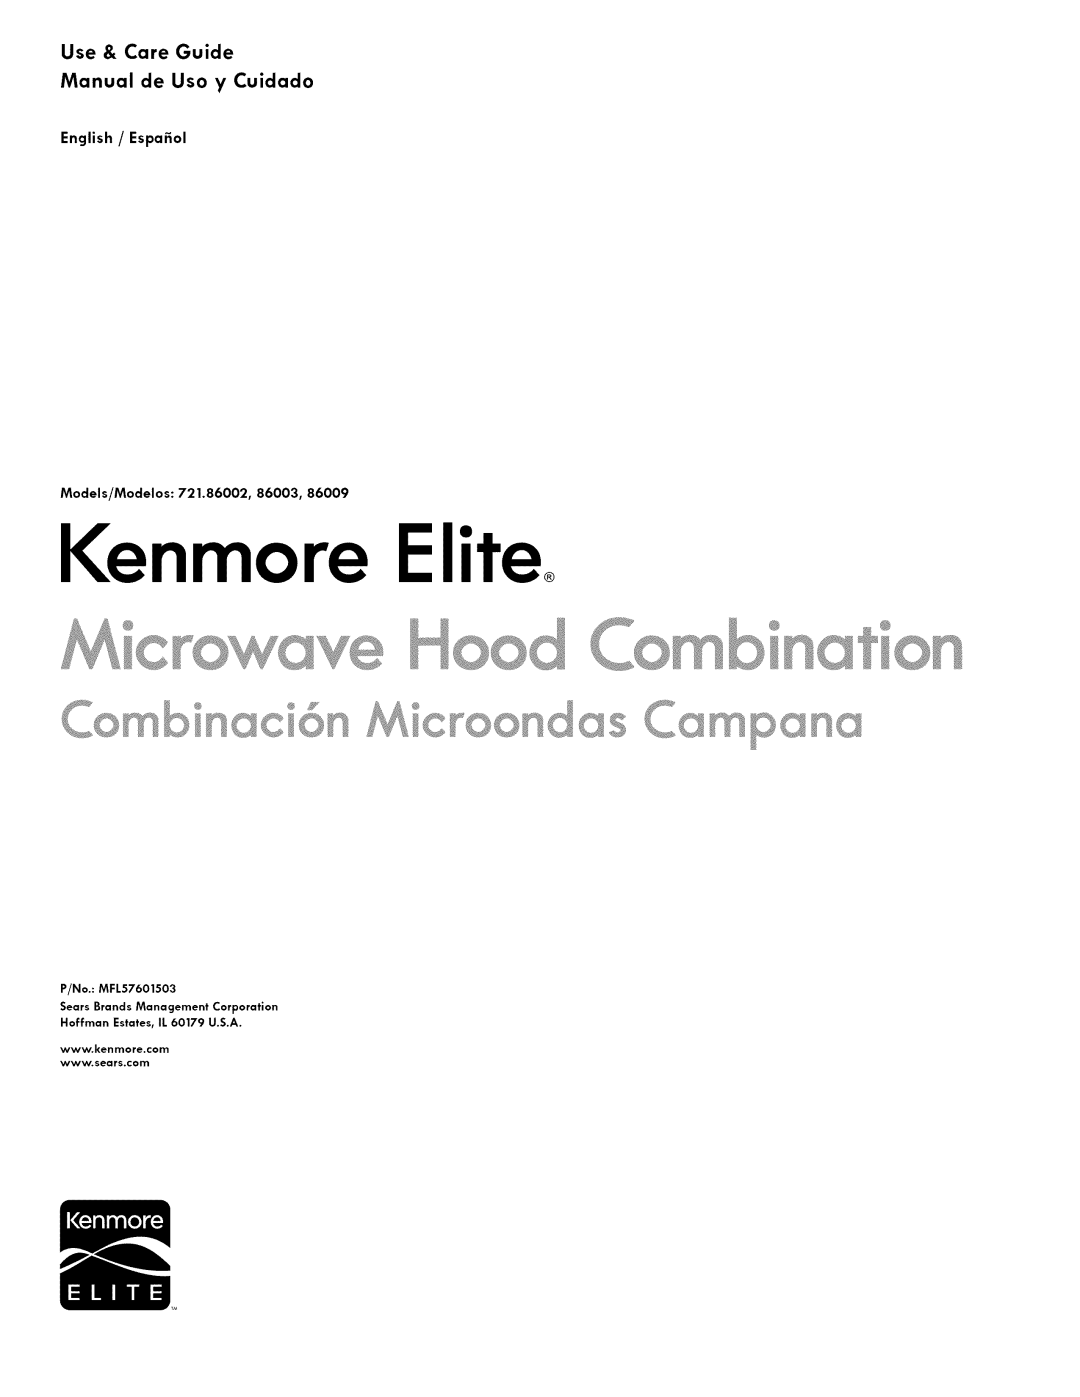 Kenmore 721.86002 manual Kenmore Elite, Use & Care Guide Manual de Uso y Cuidado, English / Espafiol, Models/Modelos 